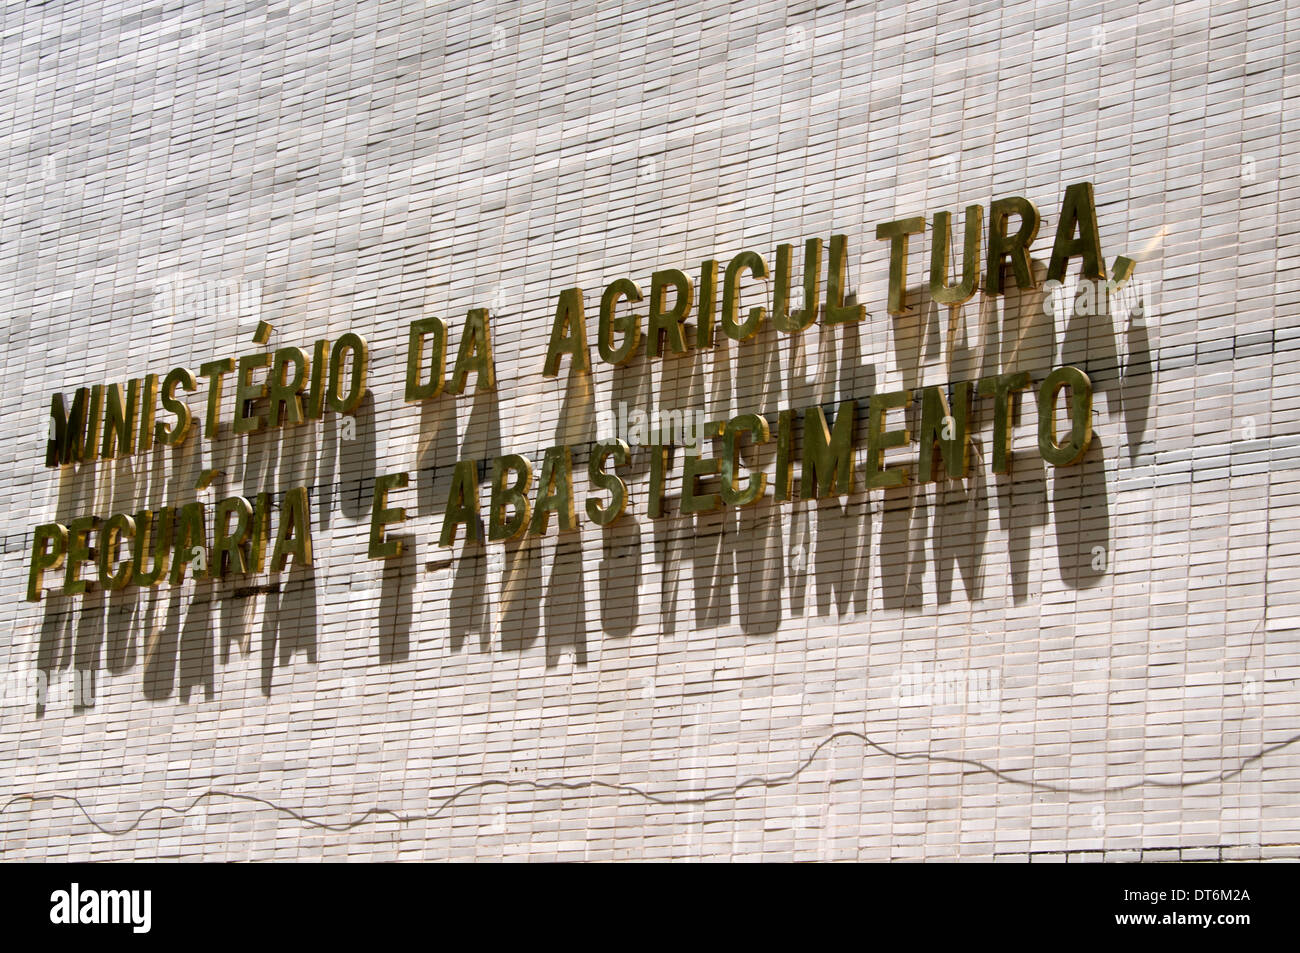 Ministère de l'agriculture et l'élevage sur l'alimentation de l'Esplanada dos Ministerios à Brasilia, Brésil Banque D'Images